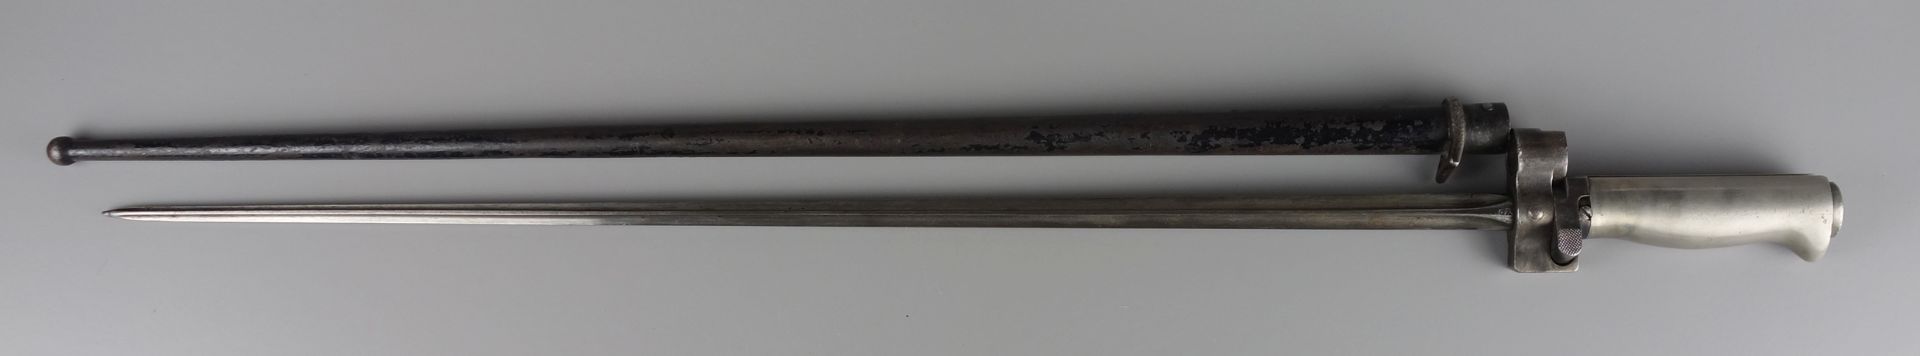 Bajonett M1886 Lebel, Frankreich, Vierkantklinge, Gesamt-L.63,4cm, L. der Schei - Bild 3 aus 3